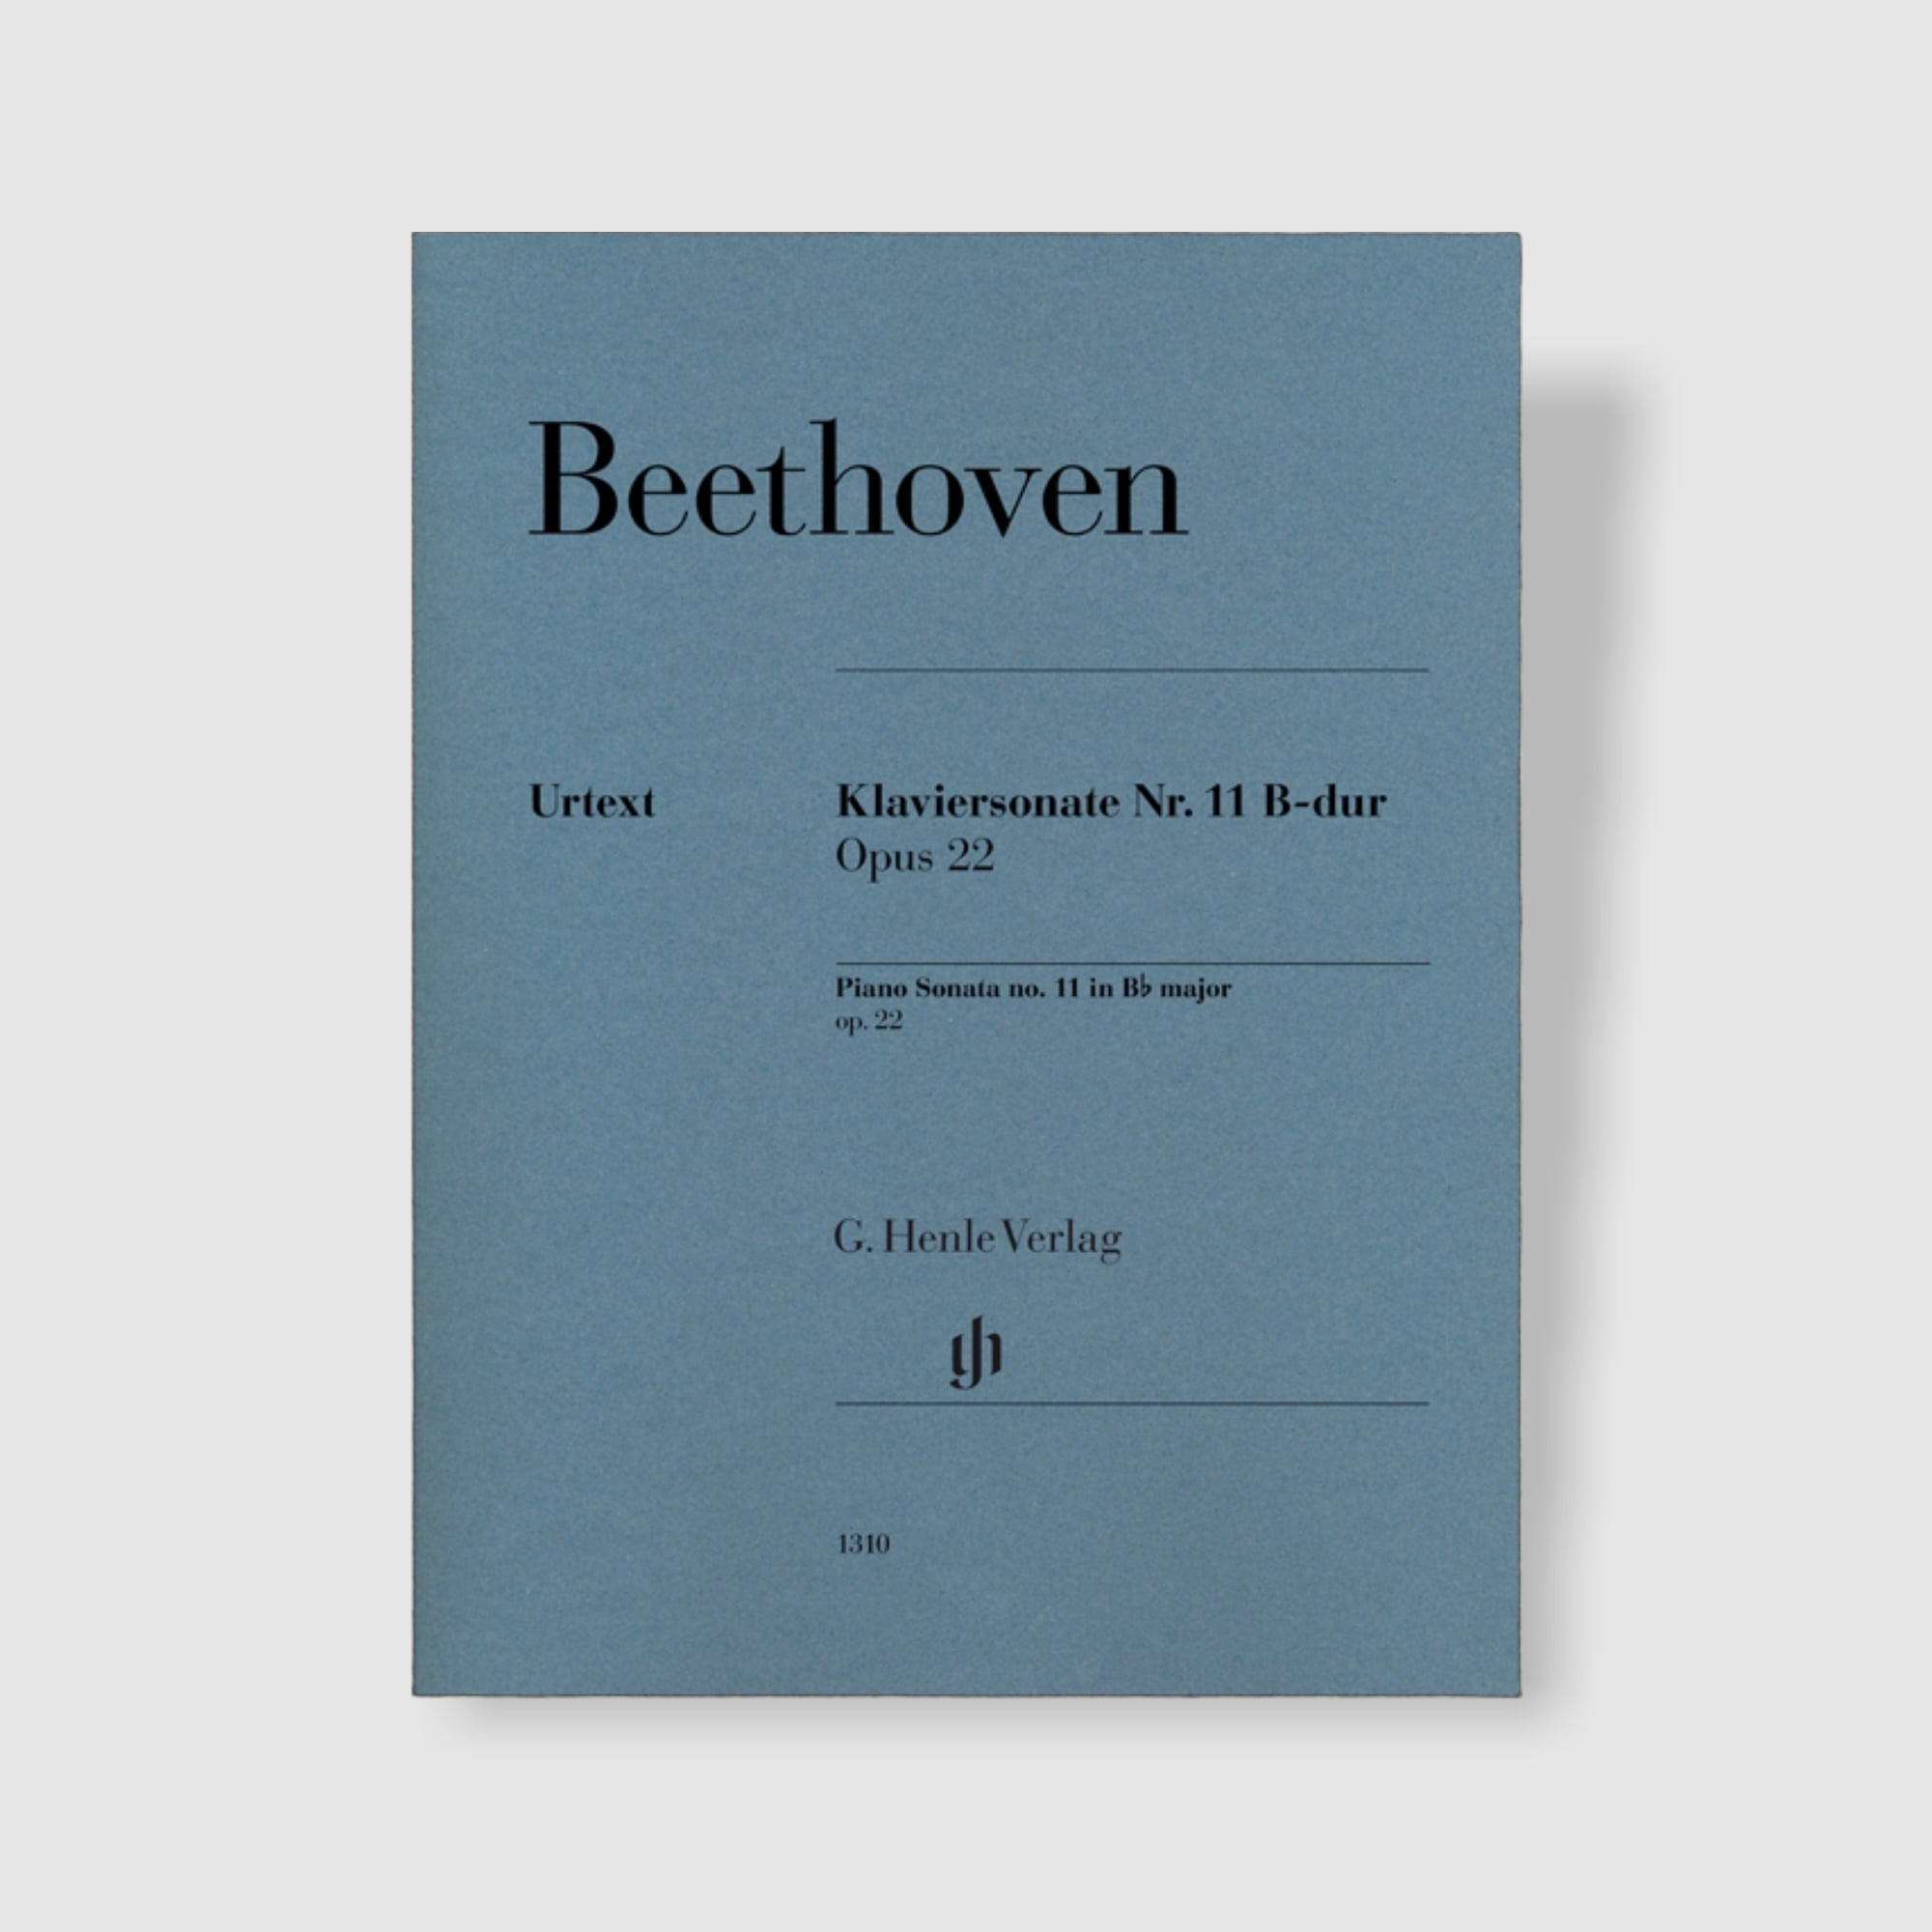 베토벤 피아노 소나타 No. 11 in B flat Major, Op. 22